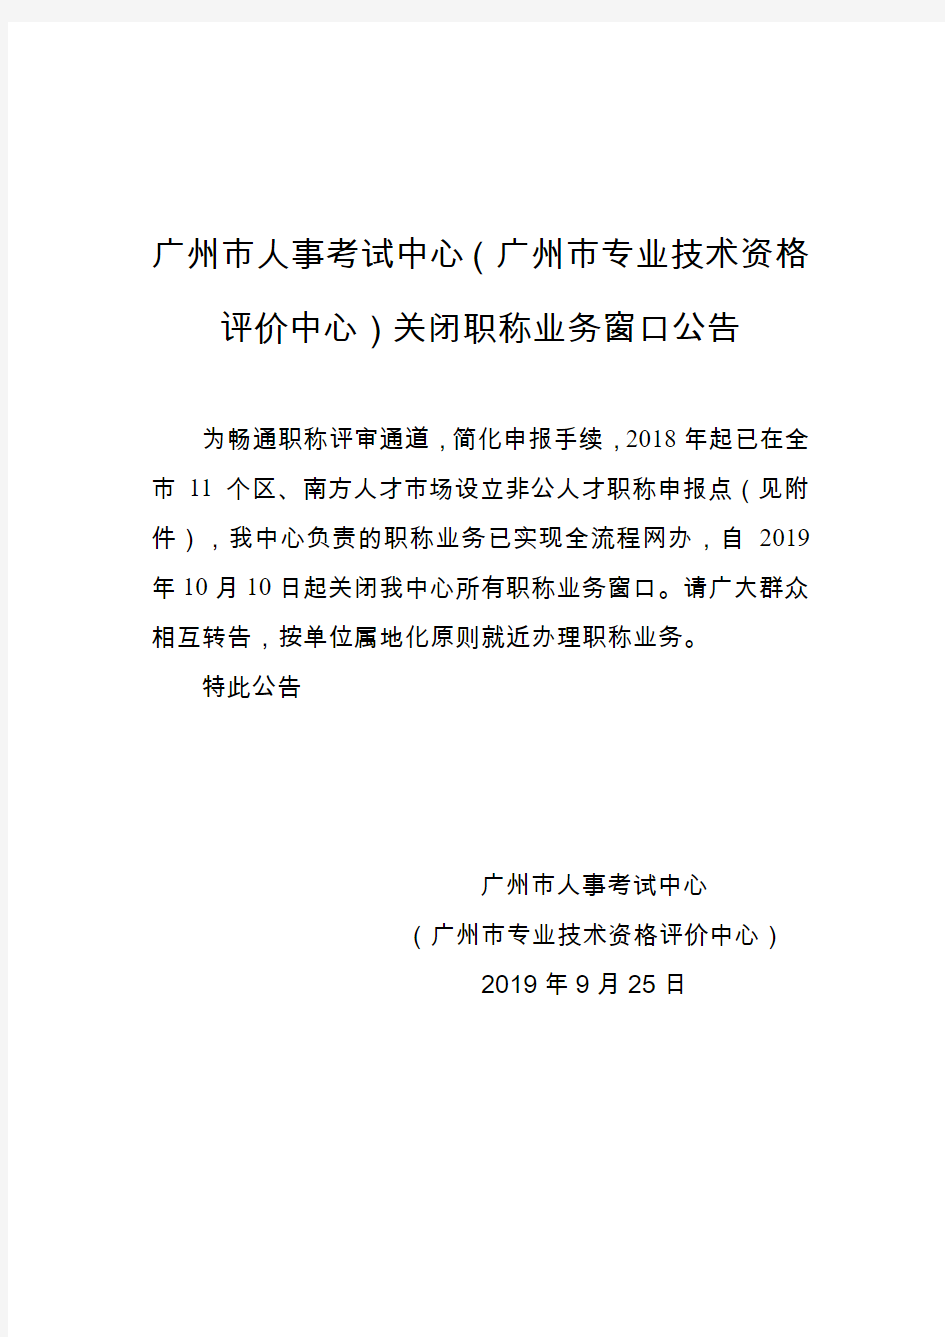 广州市人事考试中心(广州市专业技术资格评价中心)关闭职